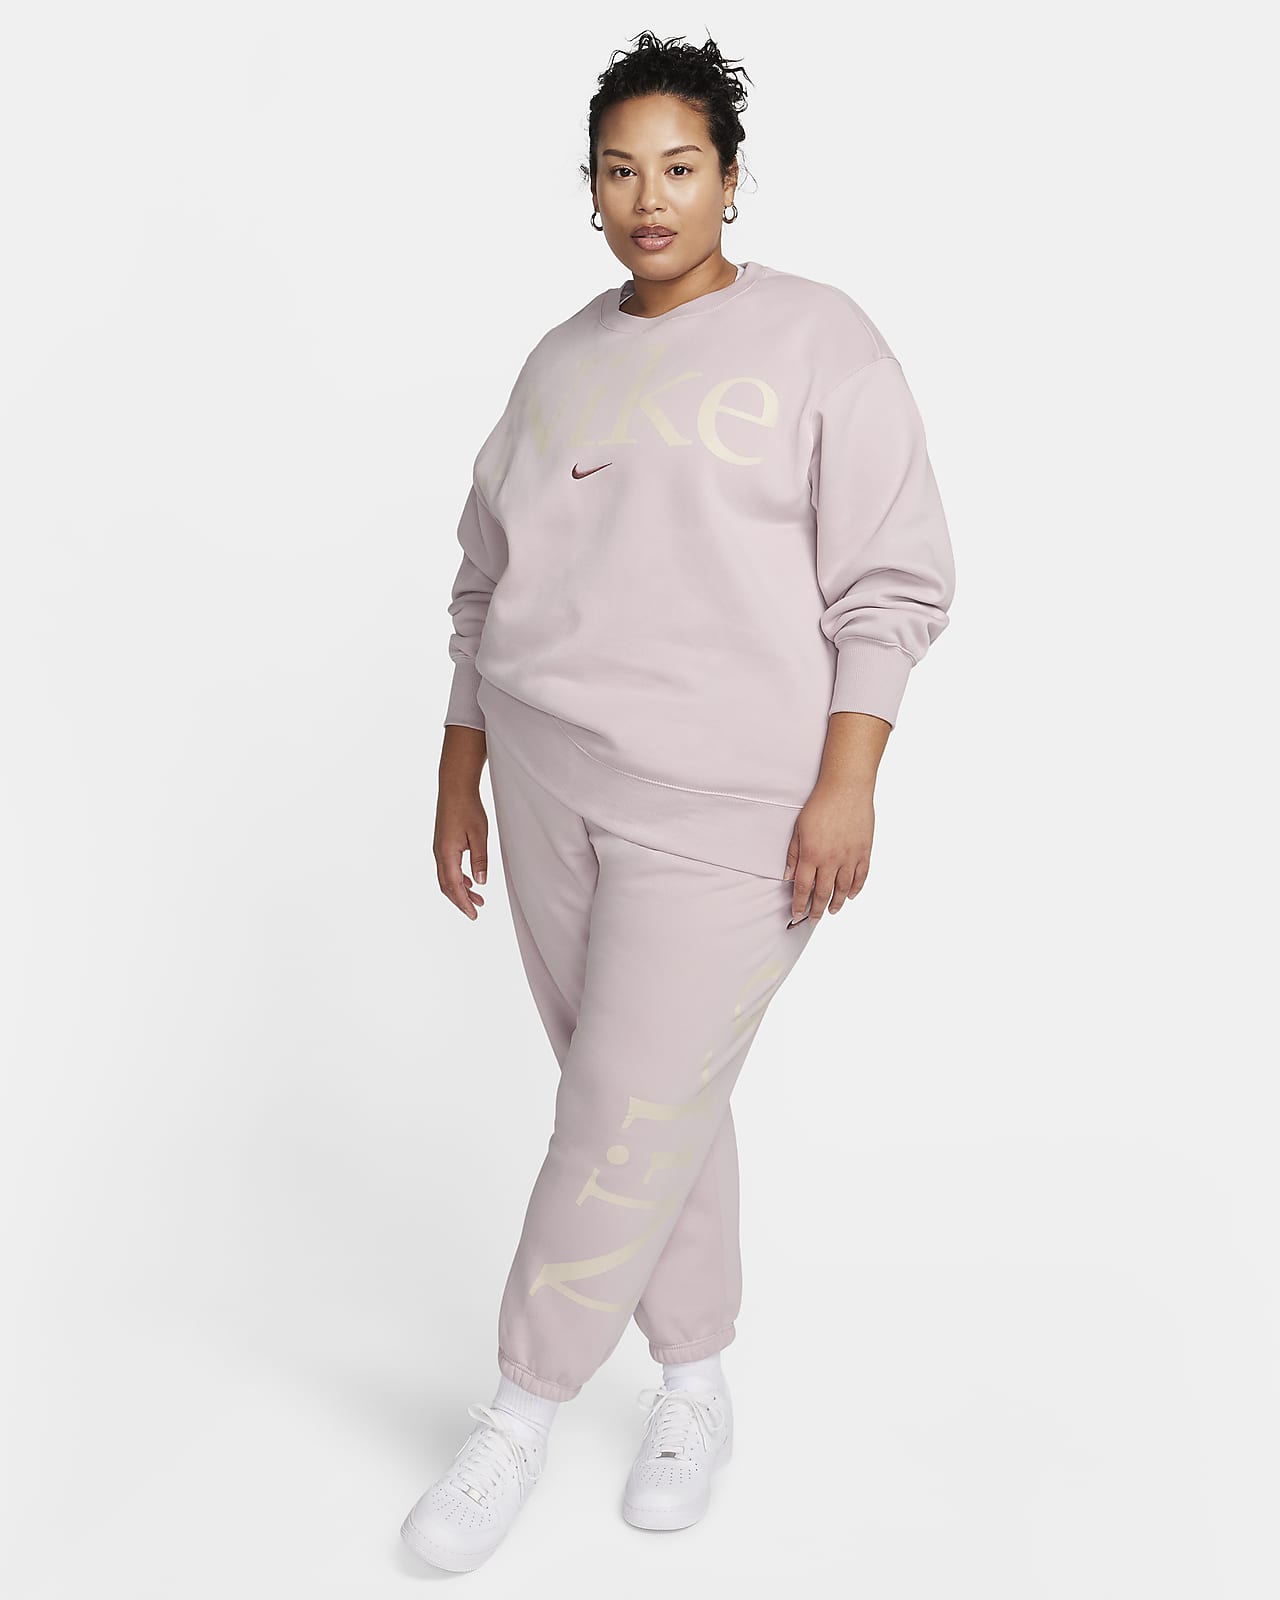 Women's Sportswear Phoenix Fleece Over-Oversized Crew Sweatshirt, Nike